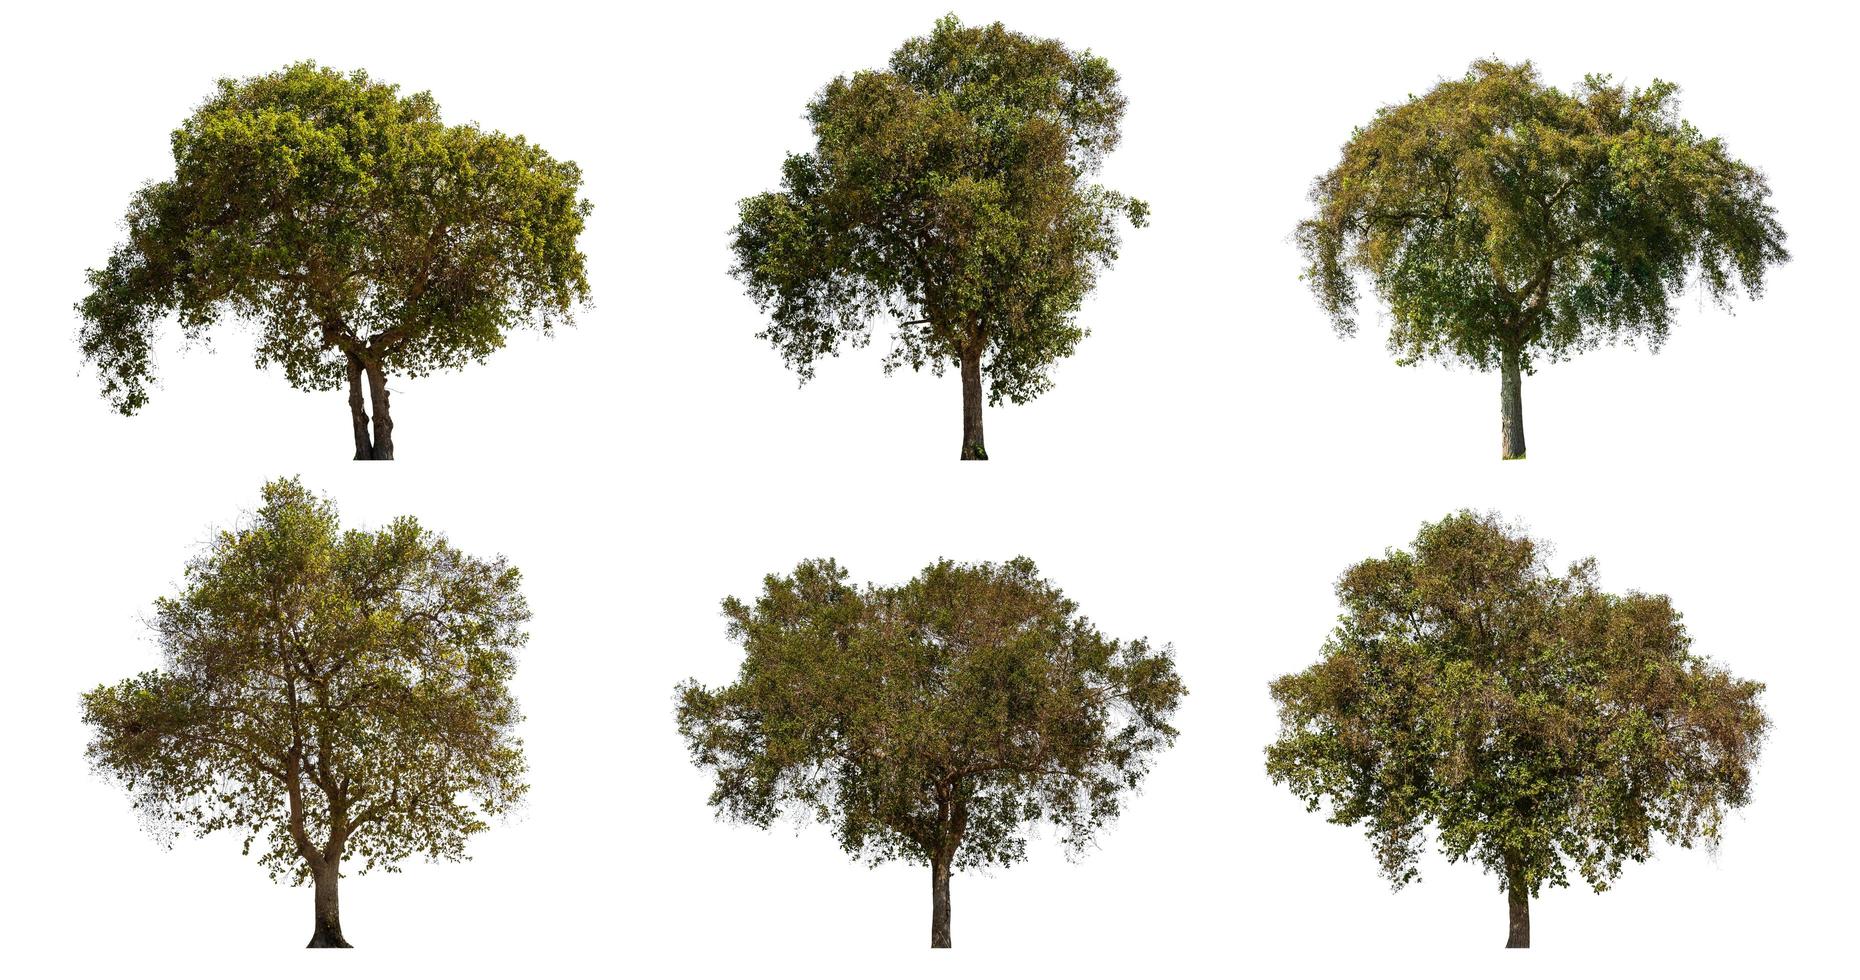 collectie van grote tropische groene boom geïsoleerd op wit. opgeslagen met uitknippad foto